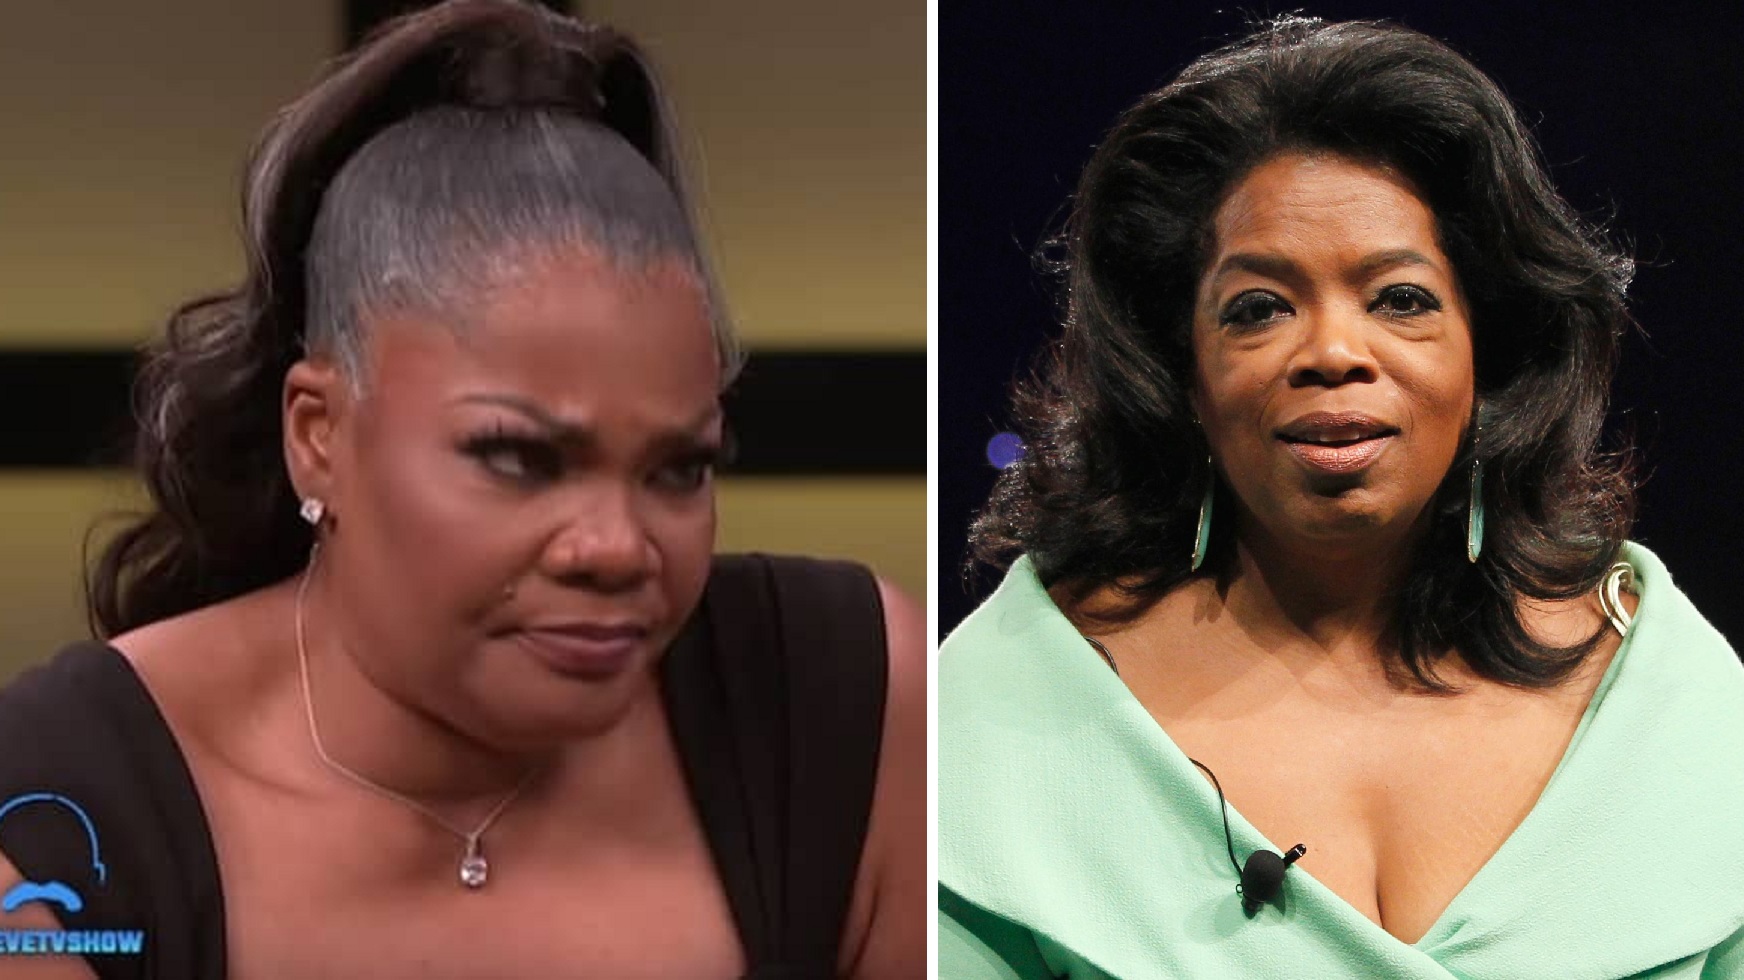 Mo’Nique: “Malicious, Oprah Winfrey Needs To Apologize To Me”